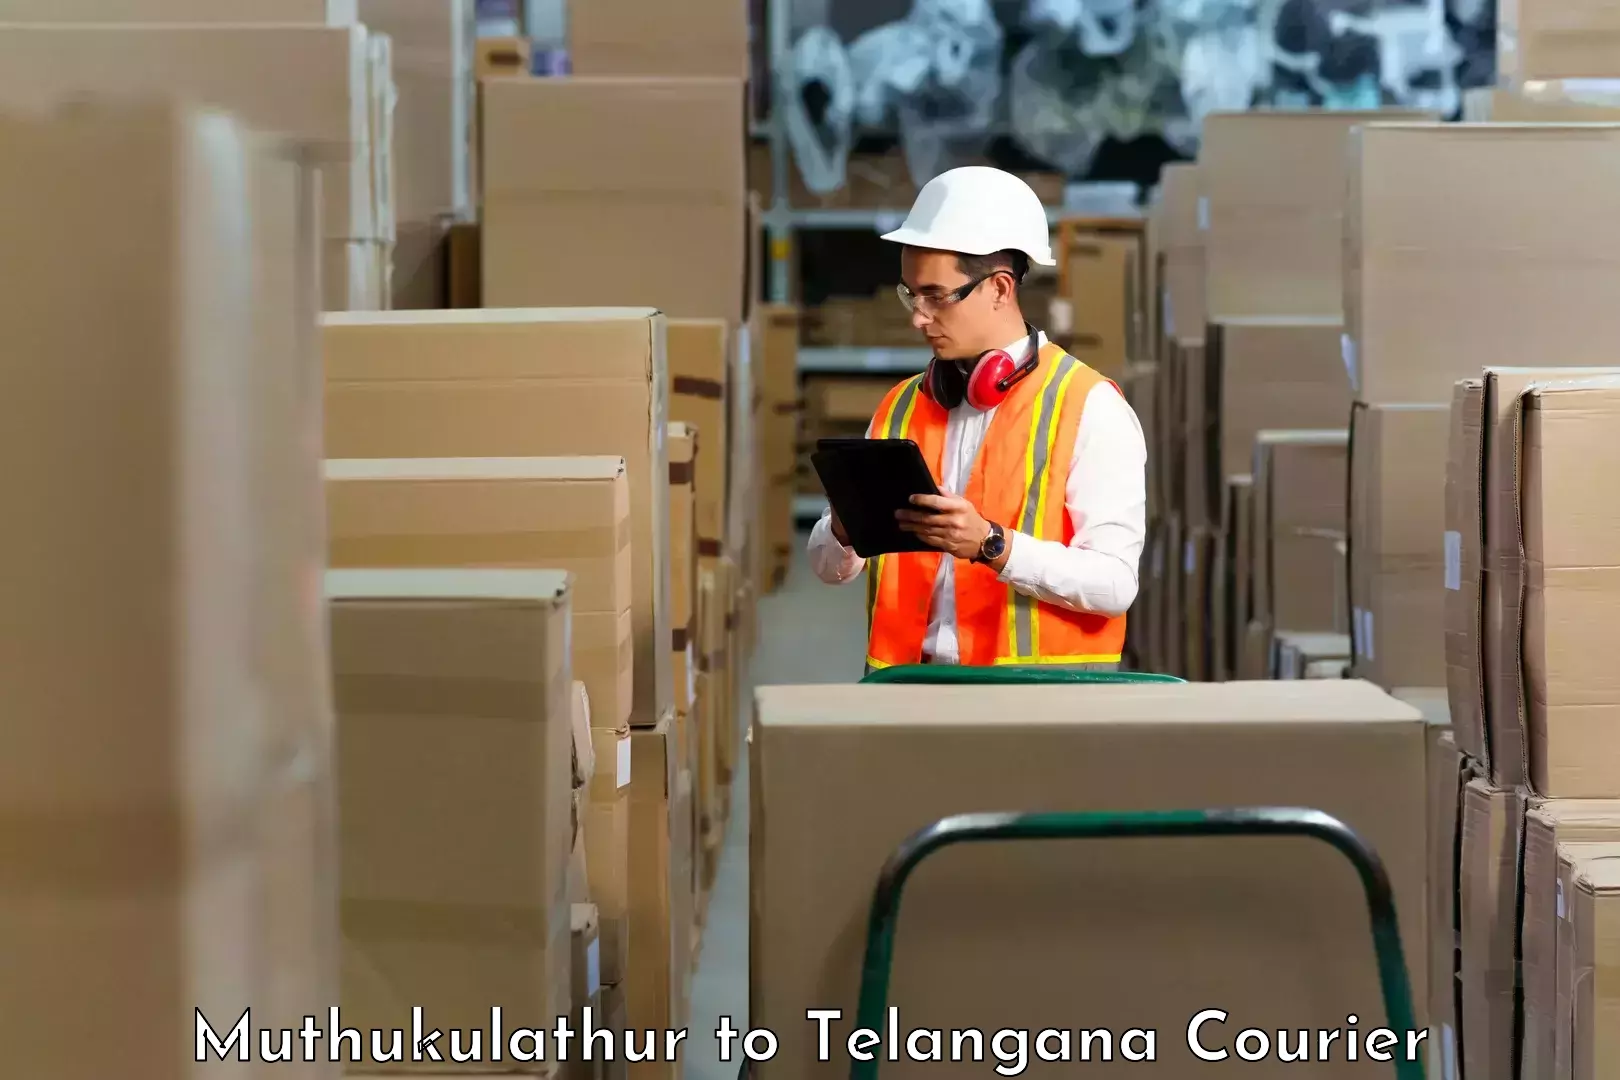 Next-generation courier services Muthukulathur to Mahabubabad